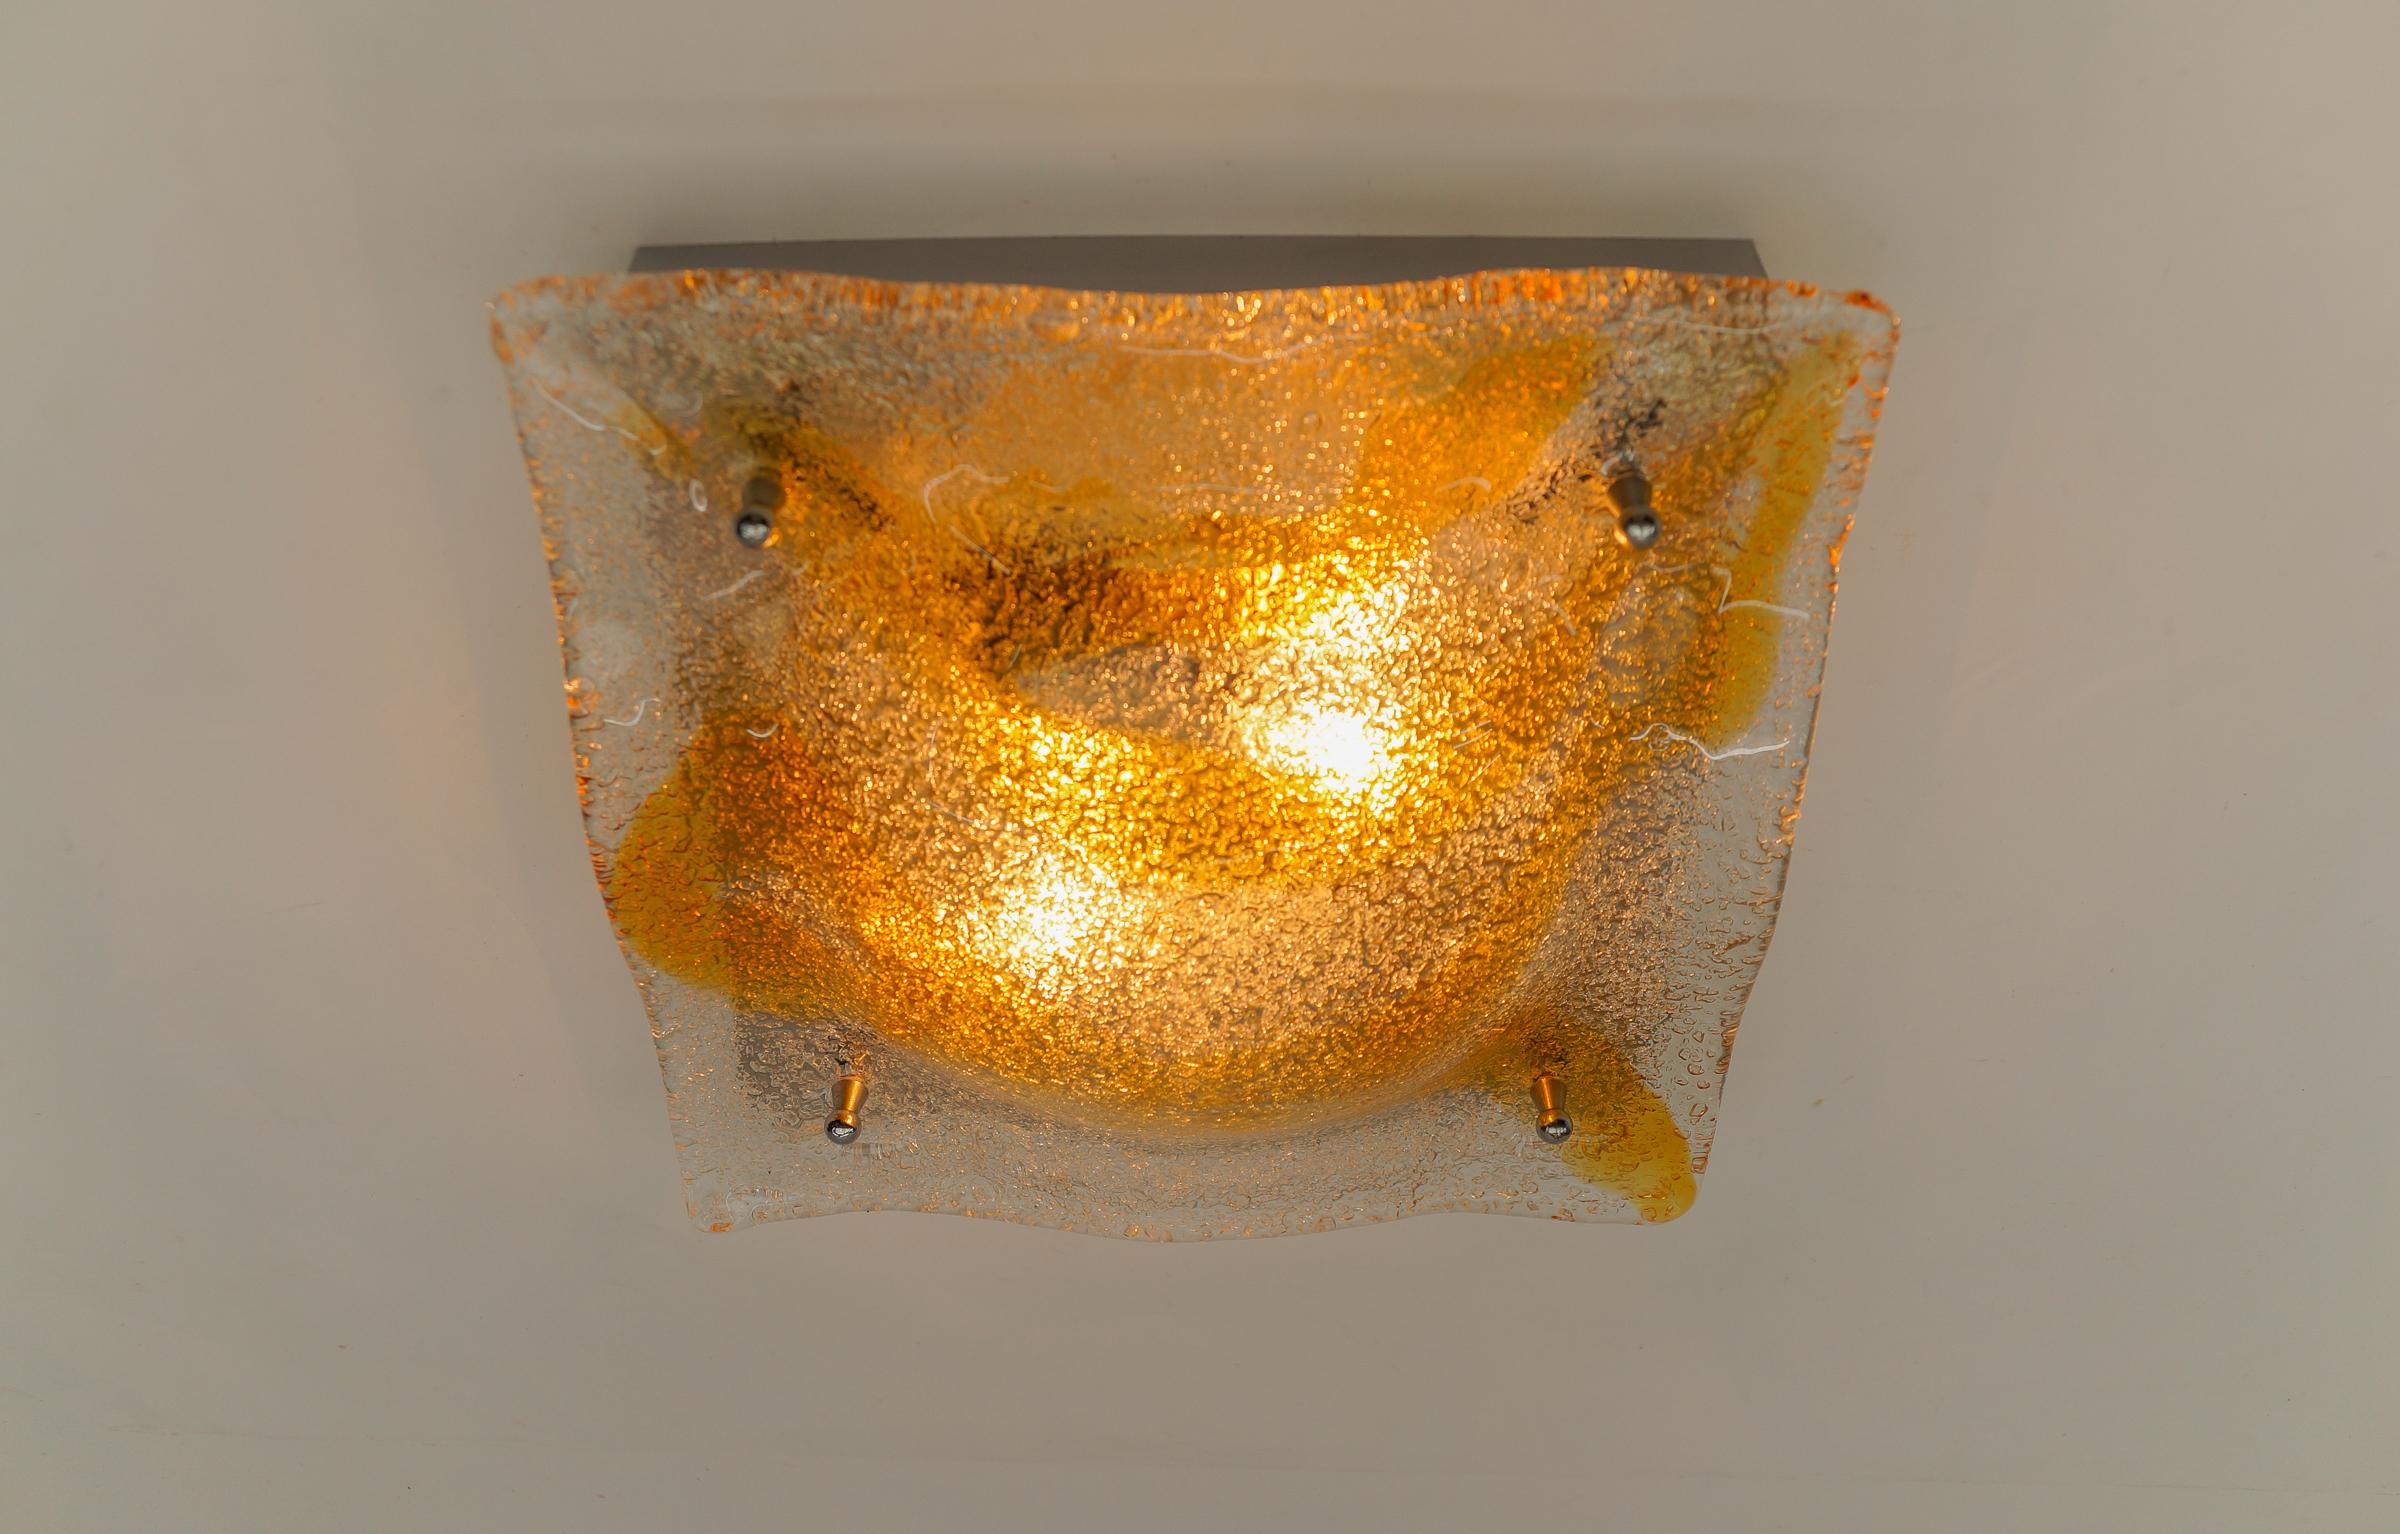 Orangefarbene Murano-Glas-Leuchter, Italien, 1960er Jahre

Die Wandlampen werden mit 1 x E14 / E15 Edison-Schraubfassung geliefert, sind verkabelt und in betriebsbereitem Zustand. Es läuft sowohl mit 110/230 Volt. Lieferung ohne Glühbirne.

Unsere